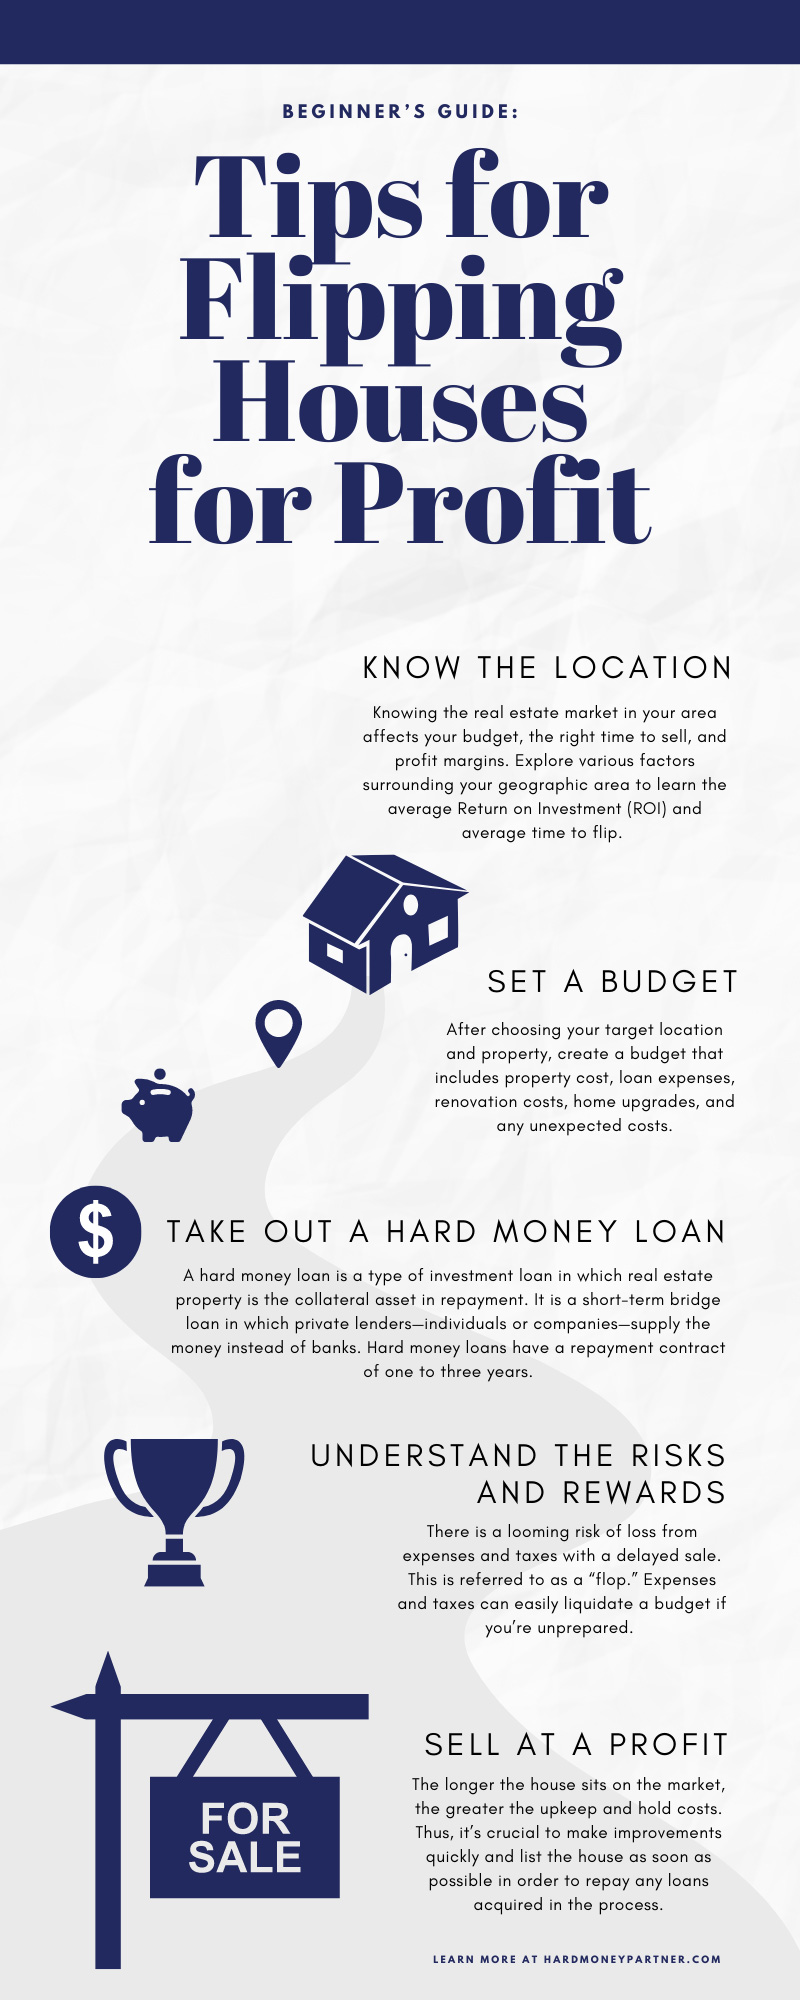 Beginner’s Guide: 6 Tips for Flipping Houses for Profit